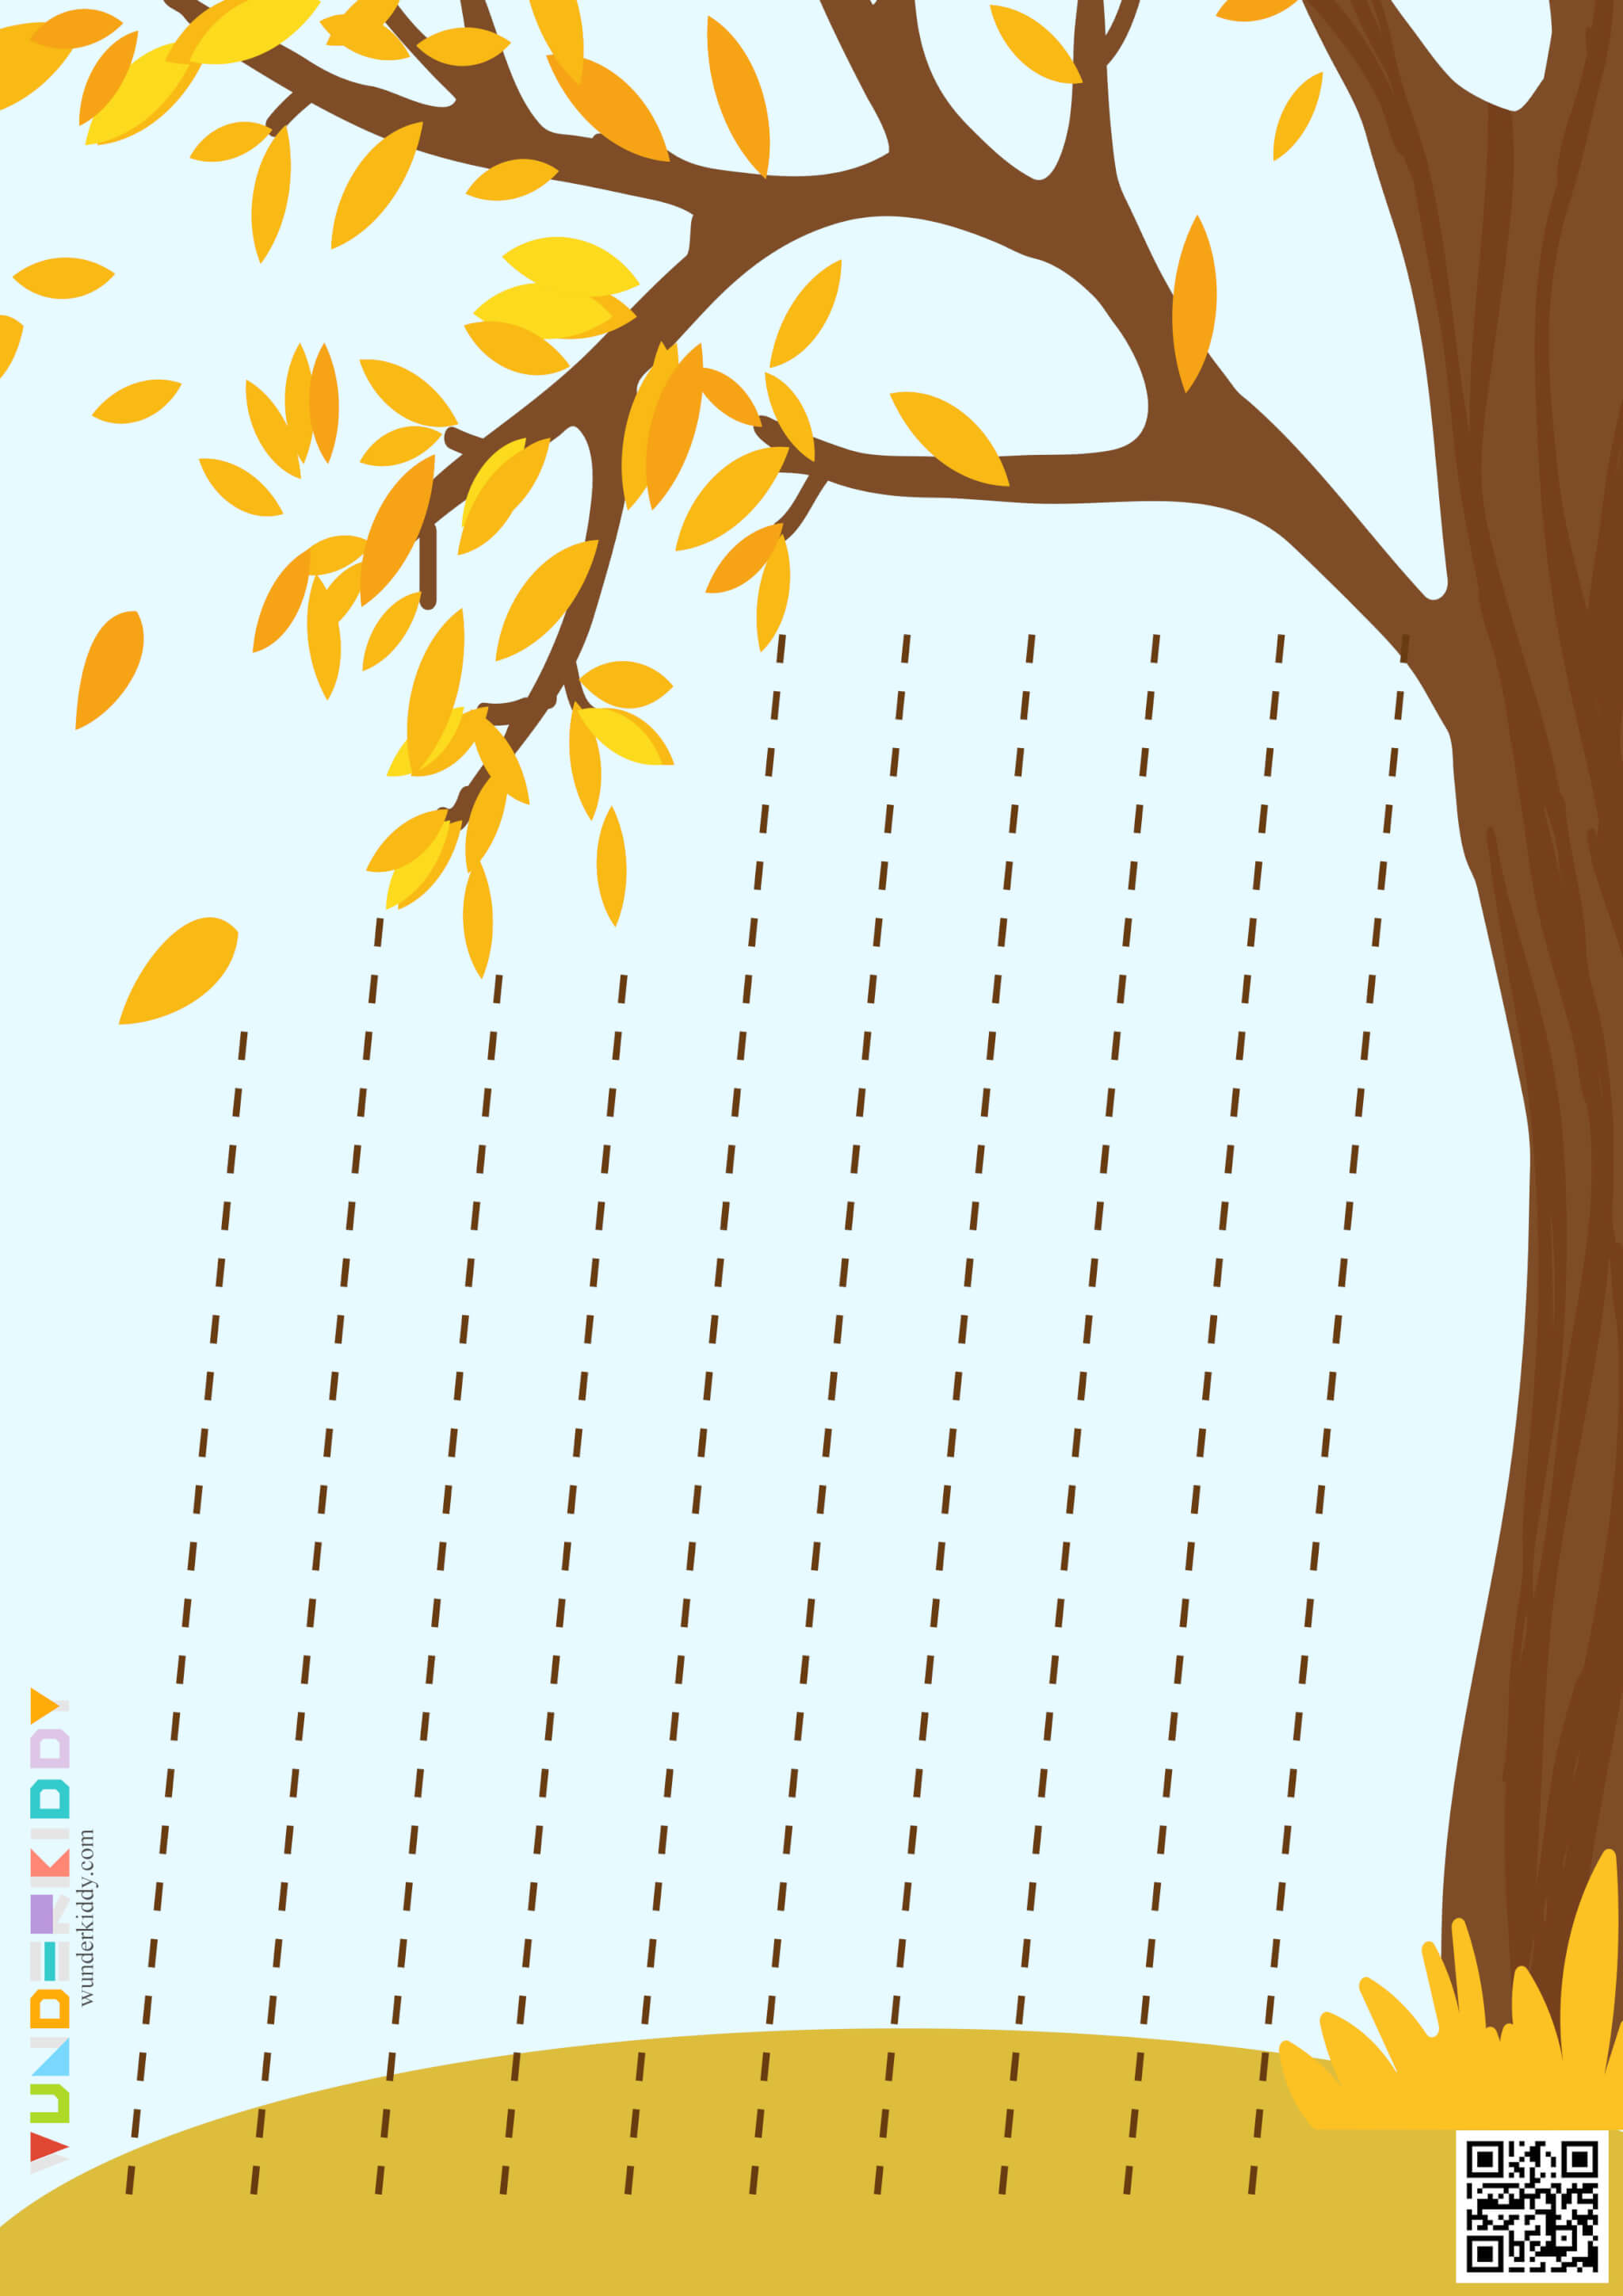 Worksheets «Leaf fall» - Image 9